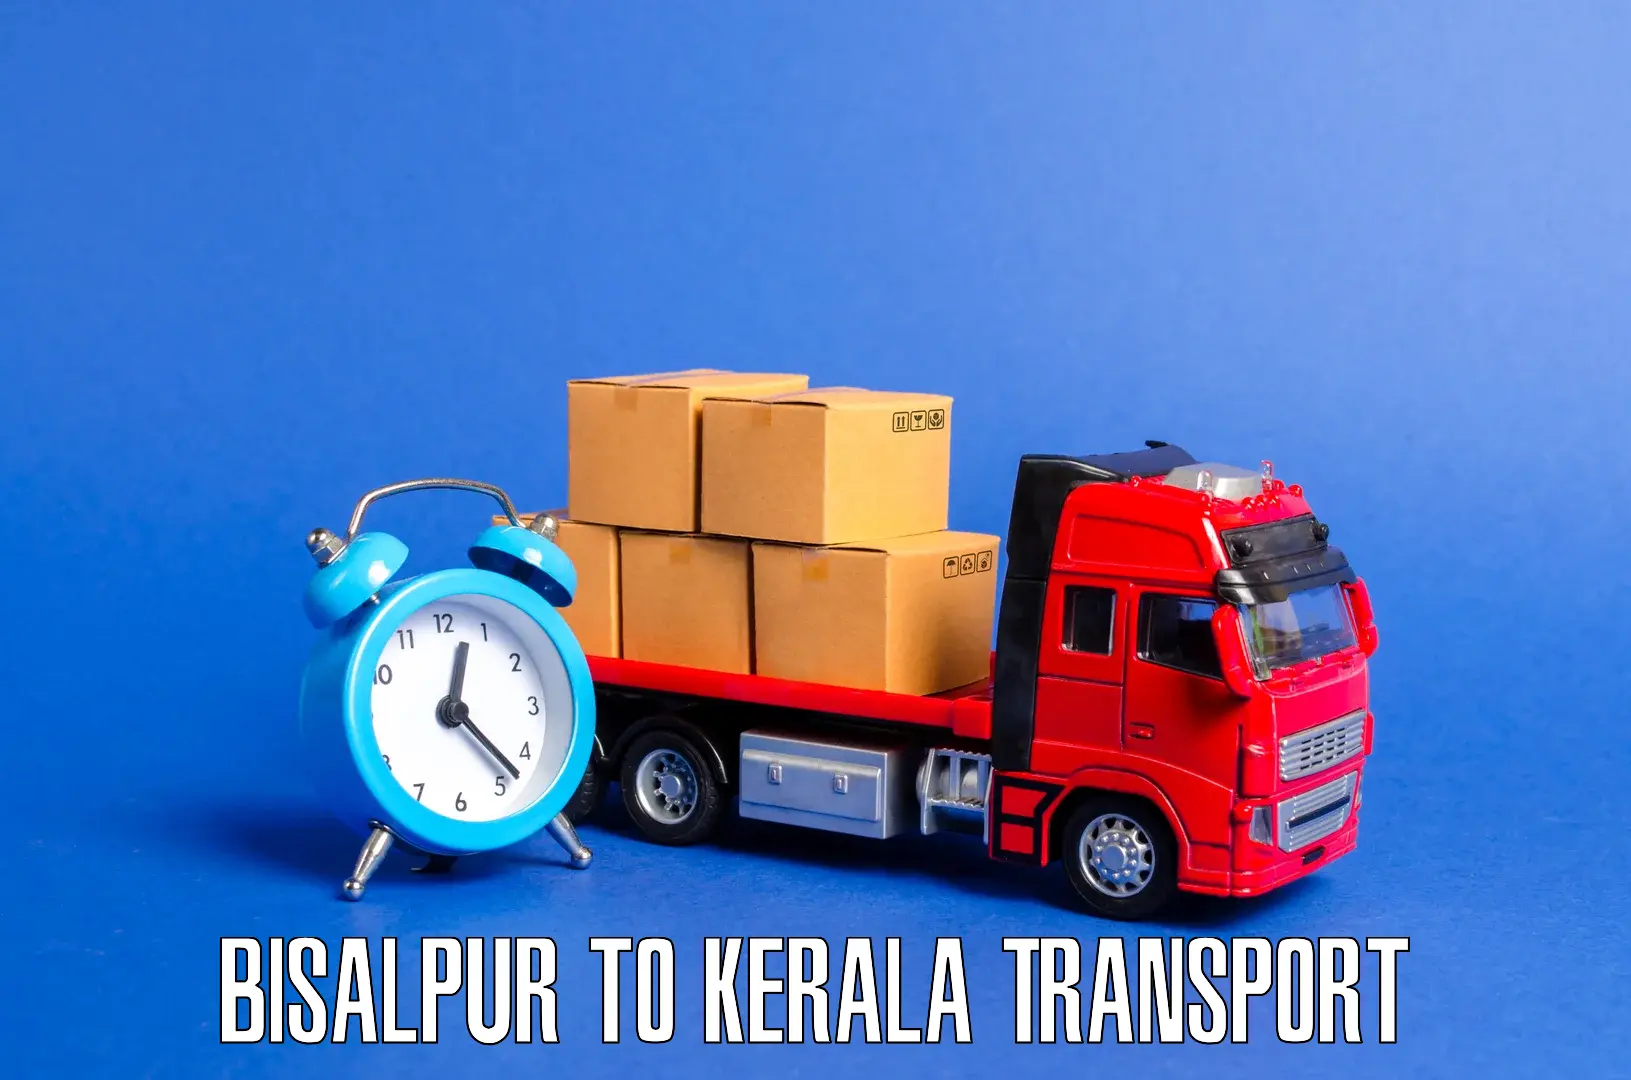 Cargo transportation services Bisalpur to Parippally